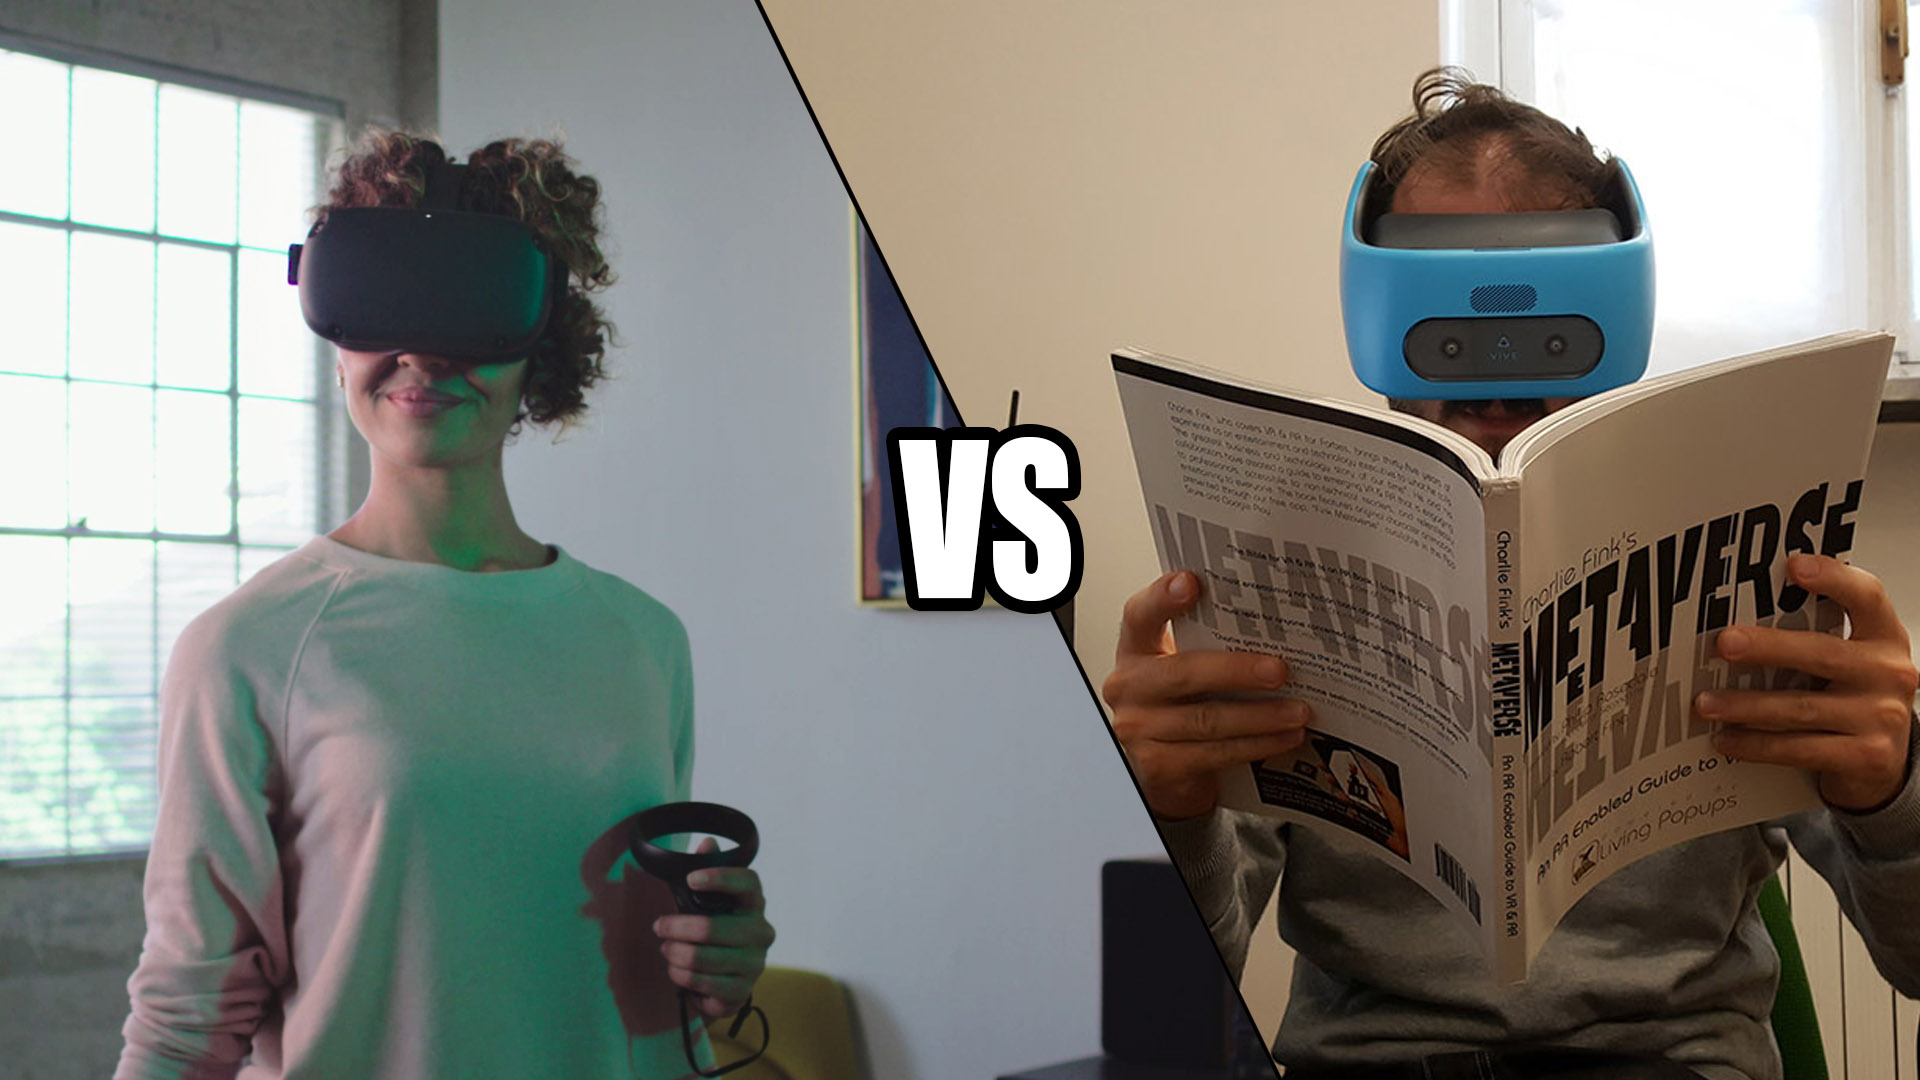 Oculus Quest vs Vive Focus: let the battle begin